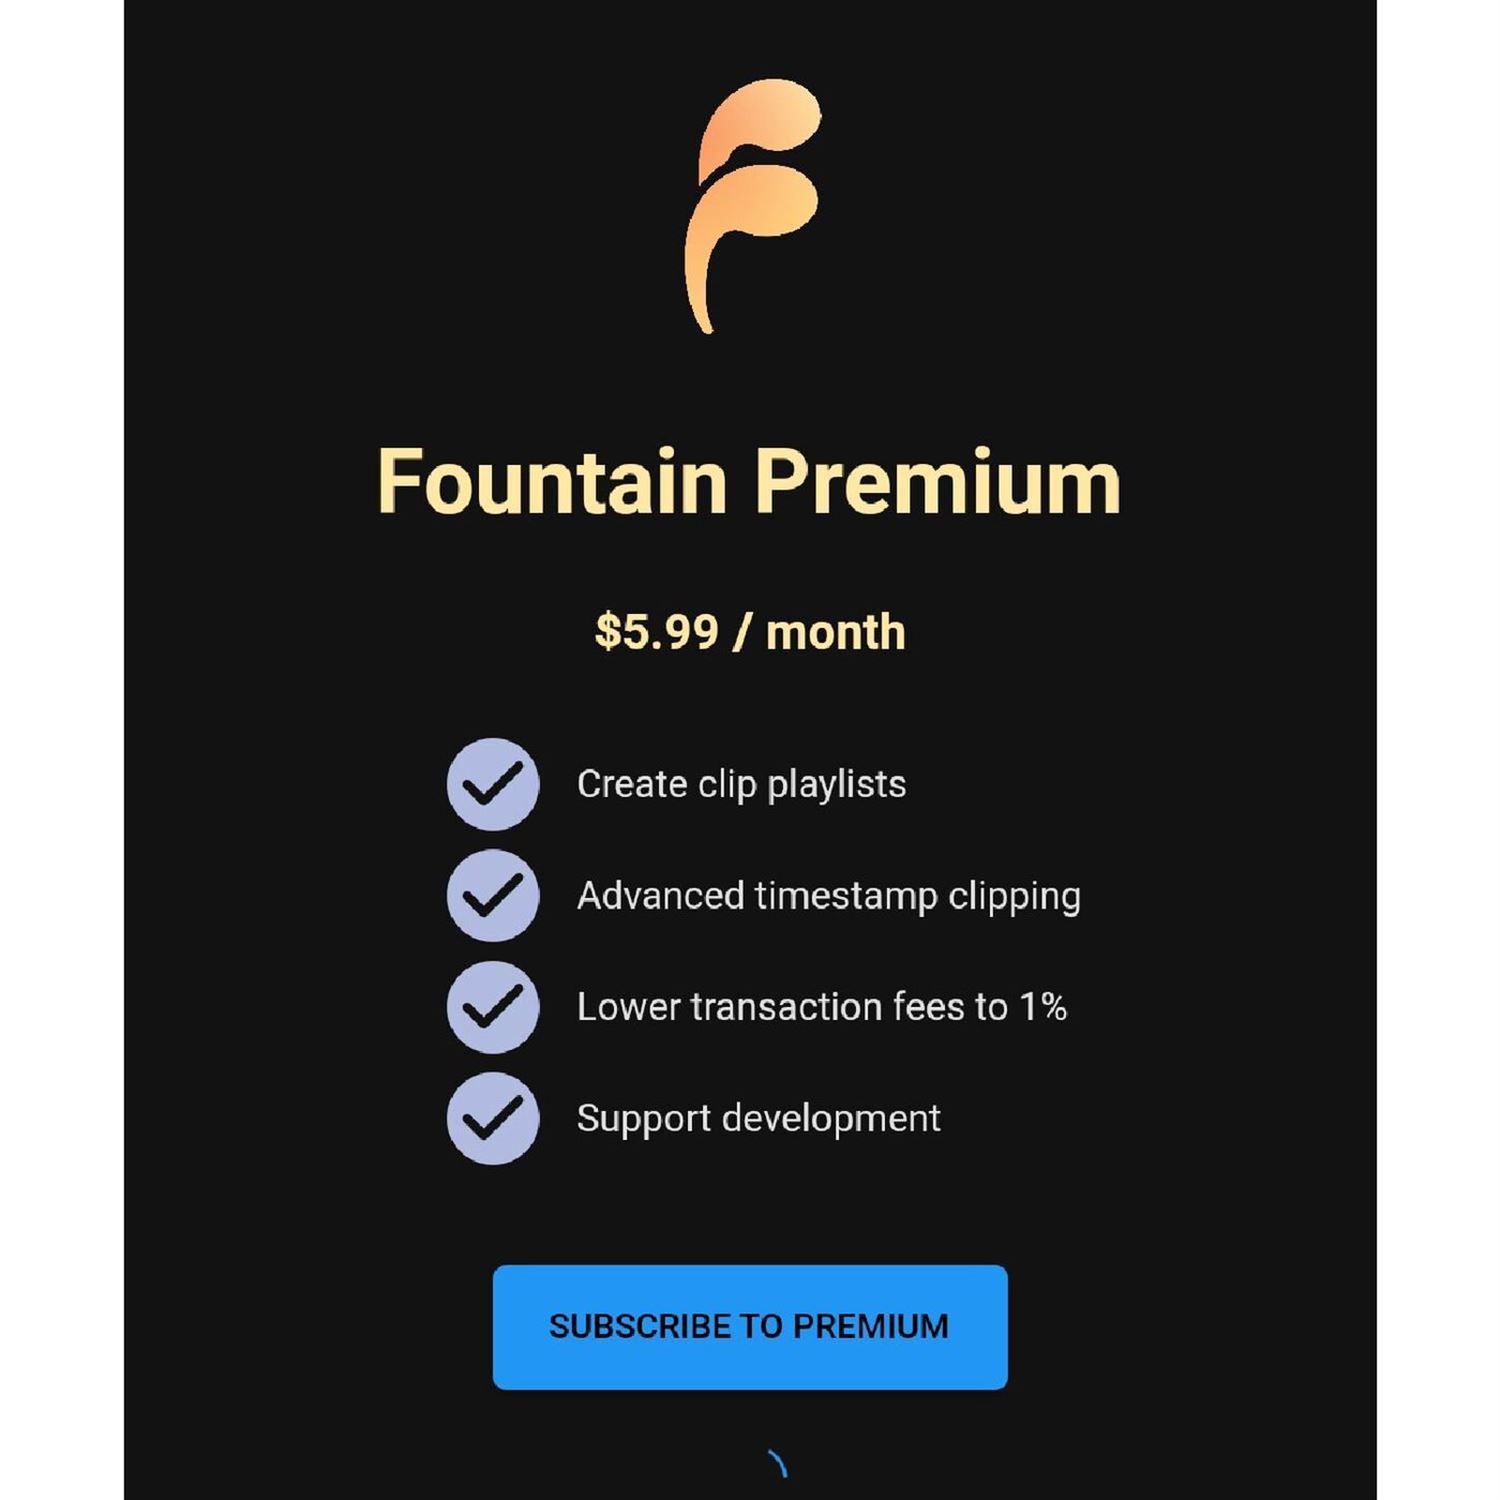 Fountain Premium